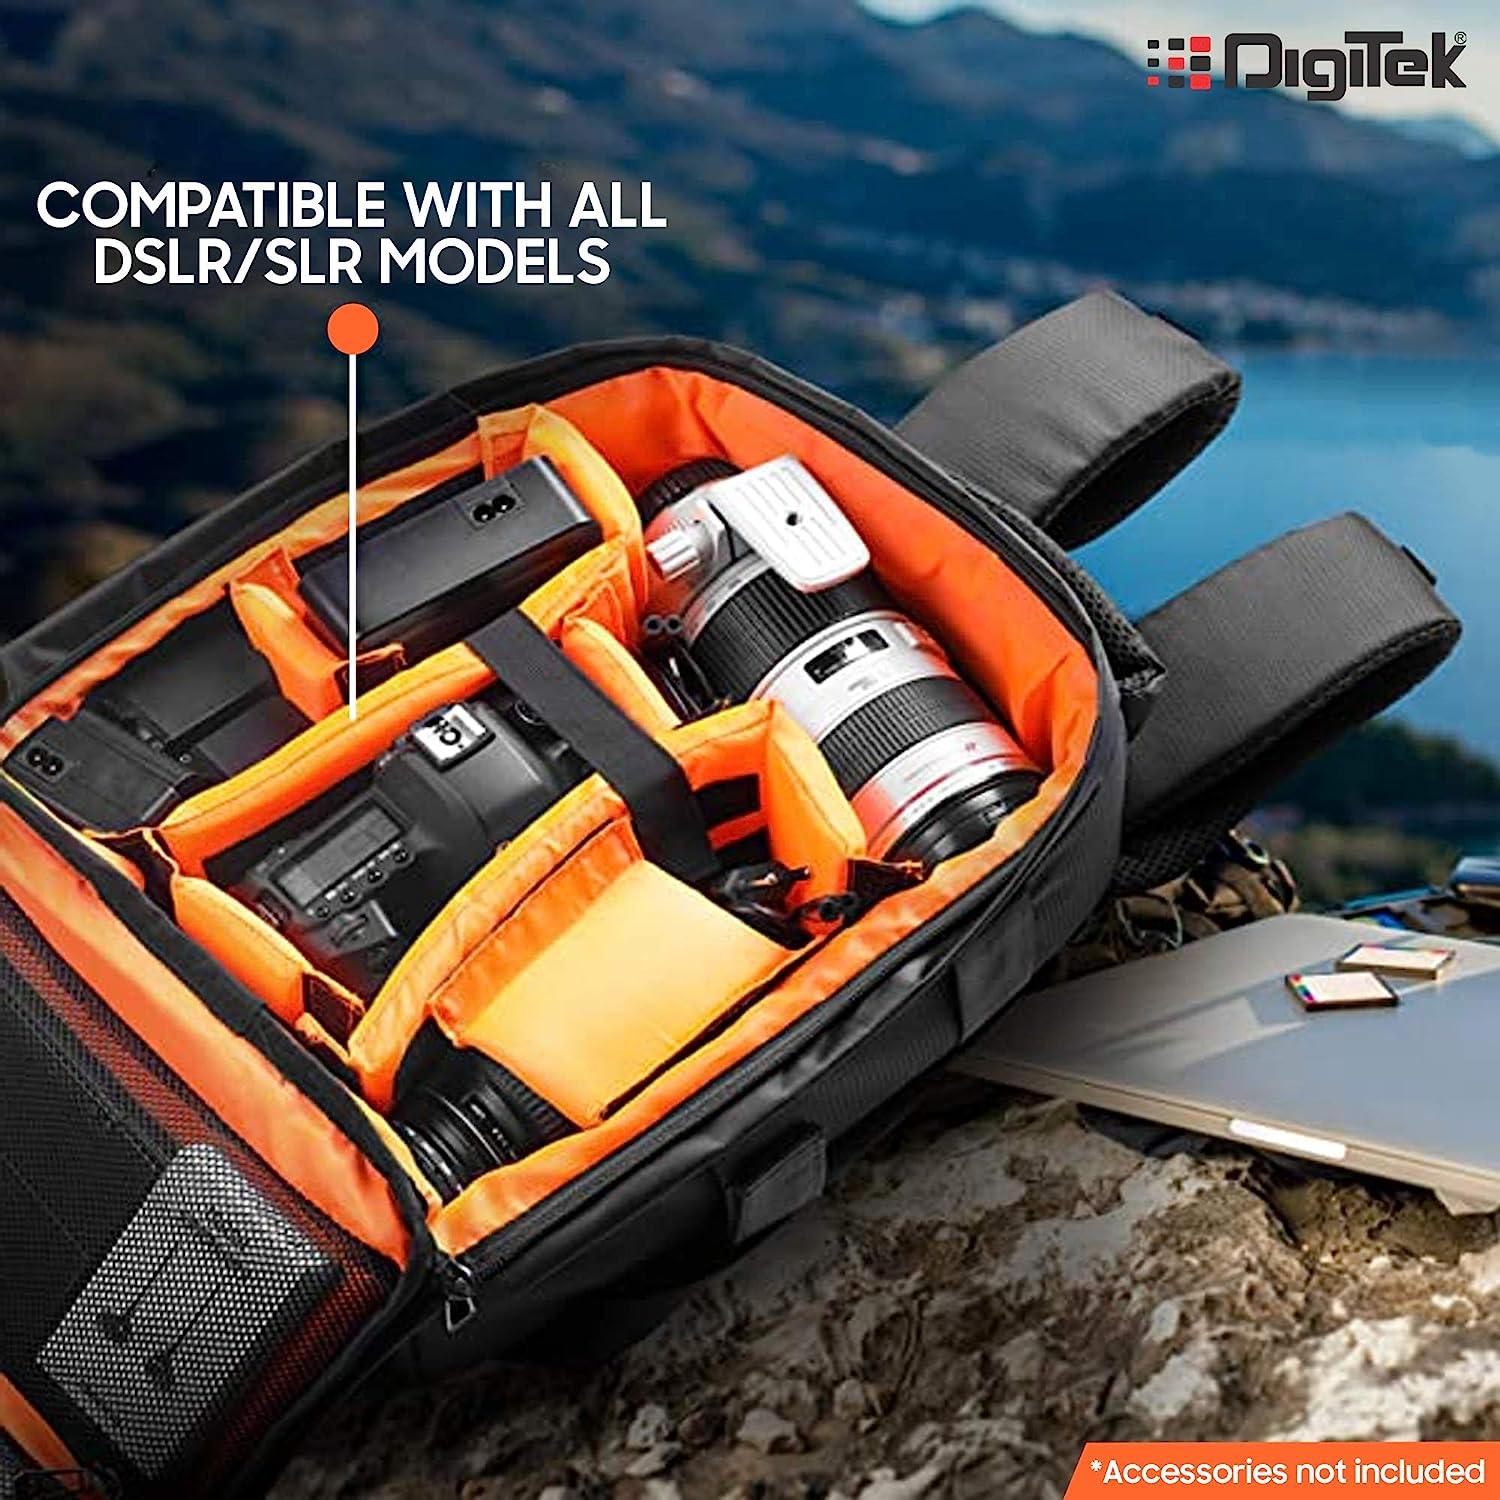 Digitek (DCB 001) Waterproof Camera Bag, Lightweight DSLR Backpack, Lens Accessories Carry Case for All DSLR Cameras-Made in India - Digitek